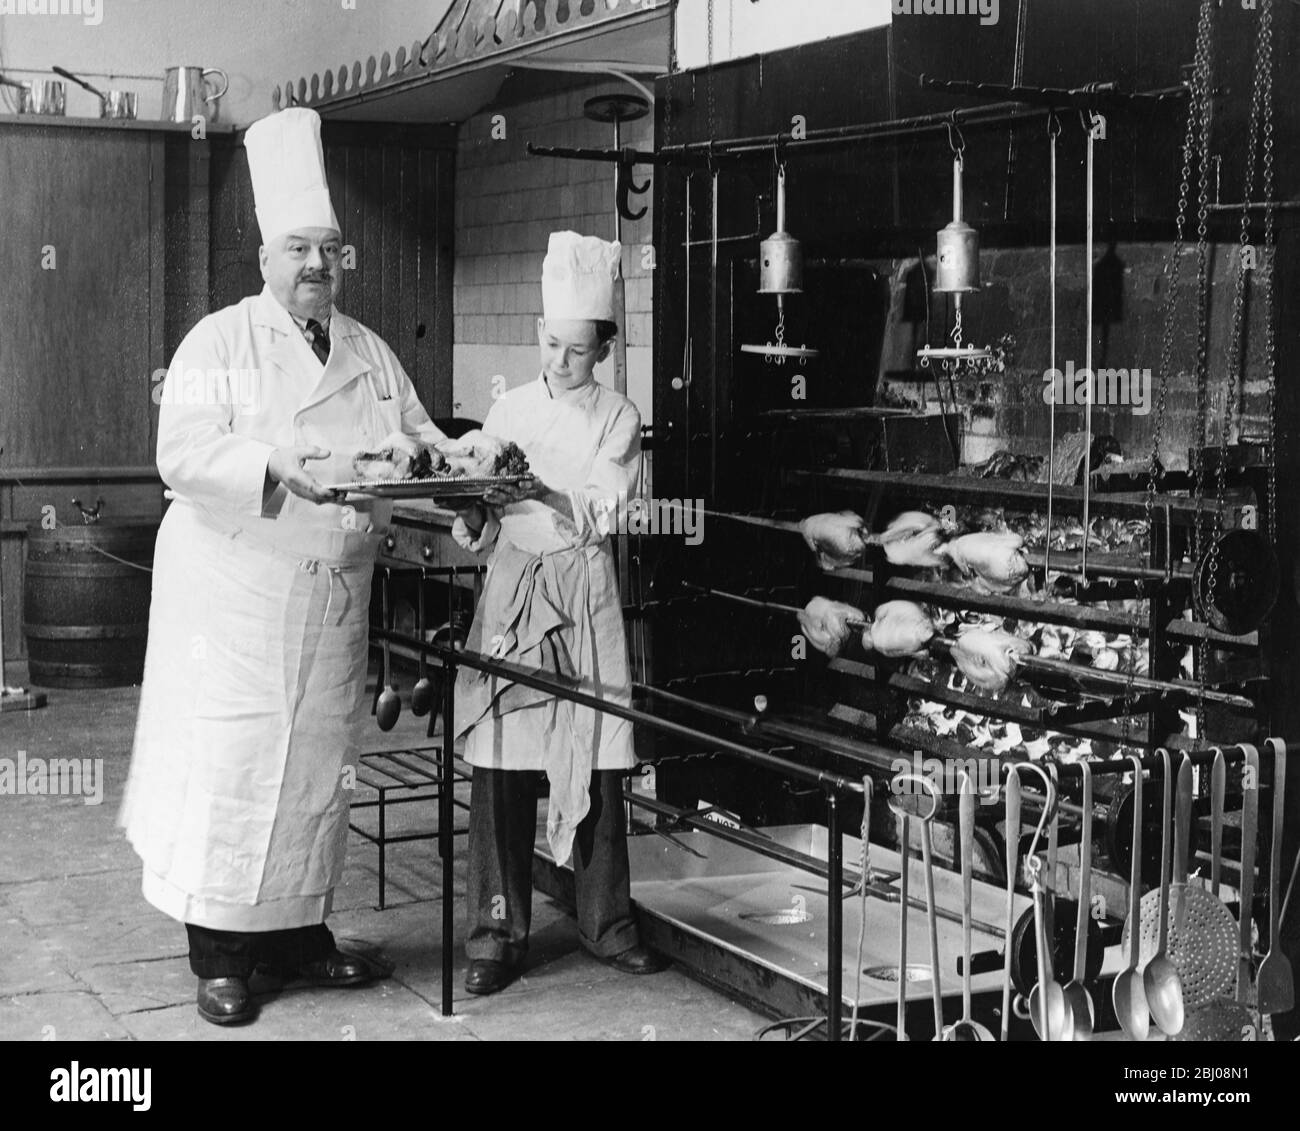 A.H. Cadier, Chefkoch im Brighton Pavilion, wird vom Junior-Koch Lloyd Payne gefälschte Hühner überreichen, um den Betrieb der riesigen offenen Kamine von 1825 in den Küchen des Royal Pavilion zu demonstrieren. Brighton, Sussex, England - 16. Juli 1951 - Stockfoto